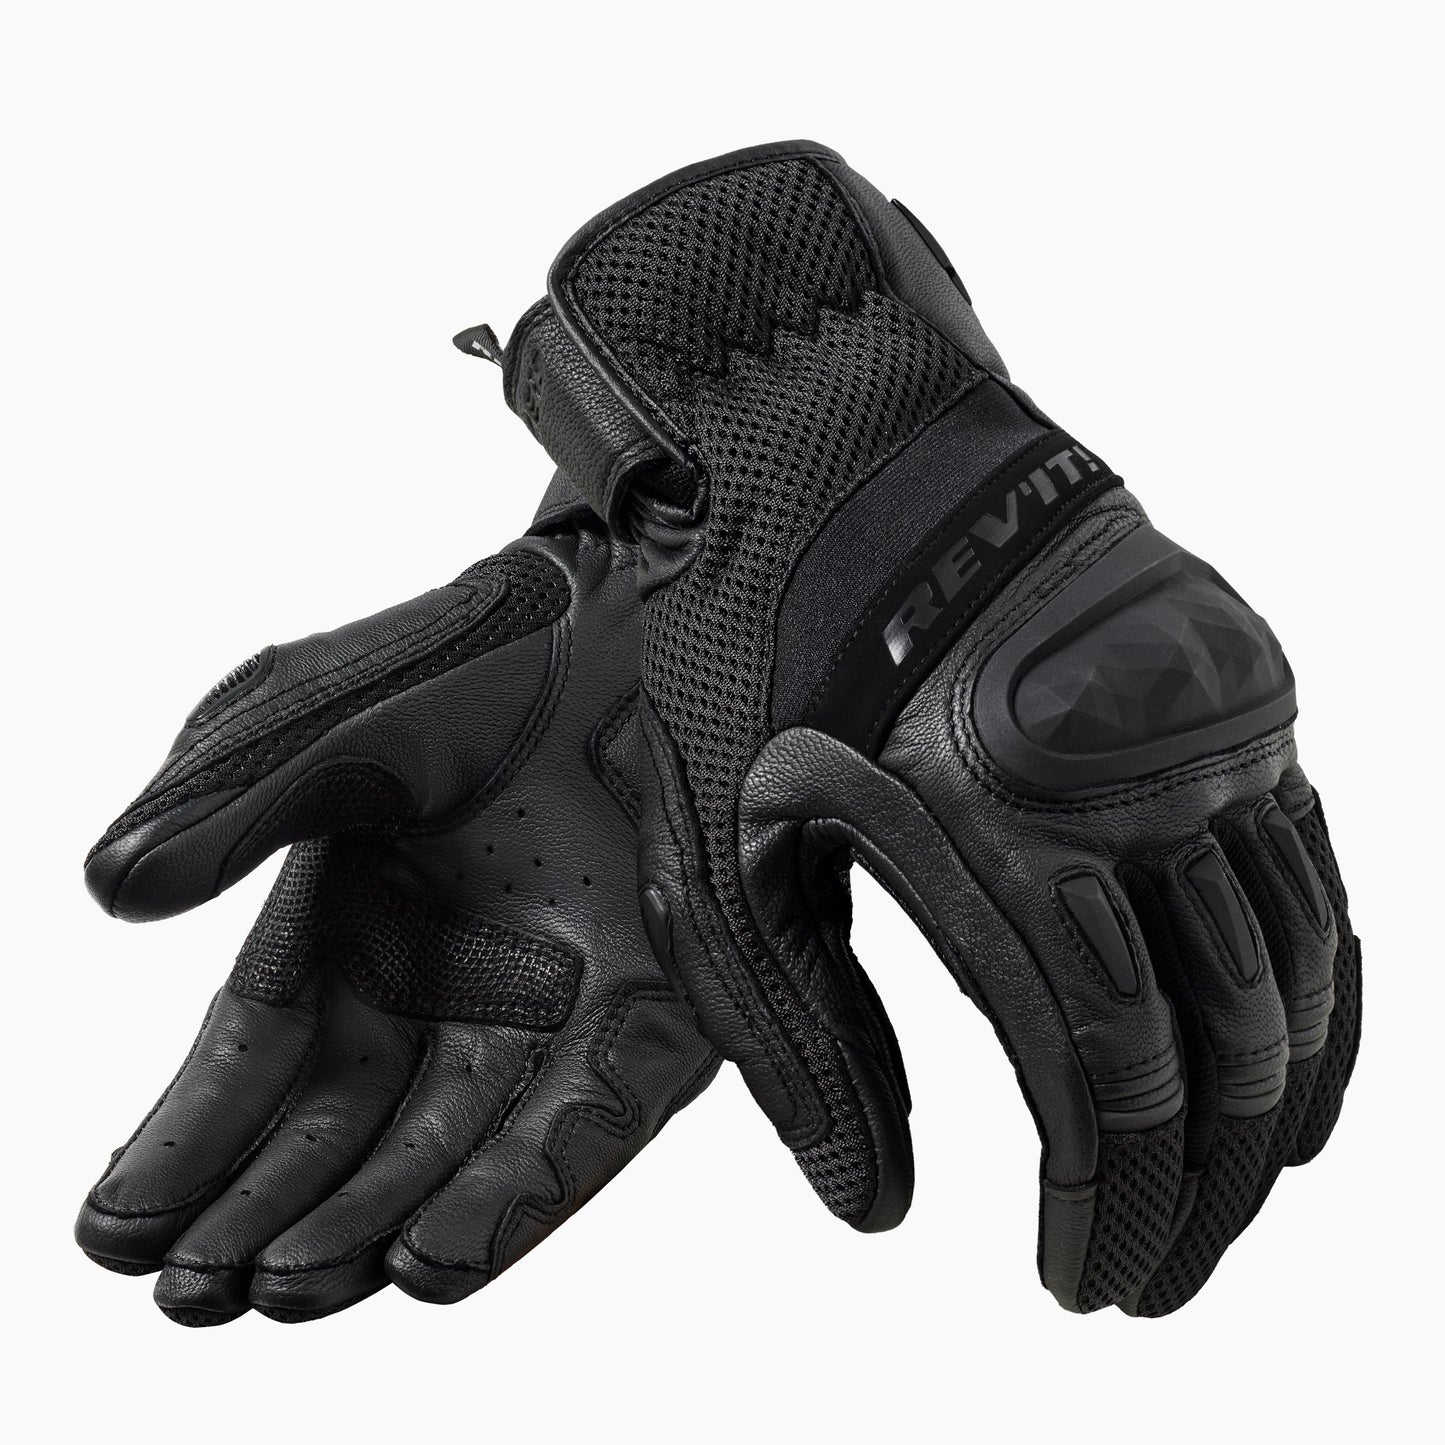 REV'IT Dirt 4 Gloves